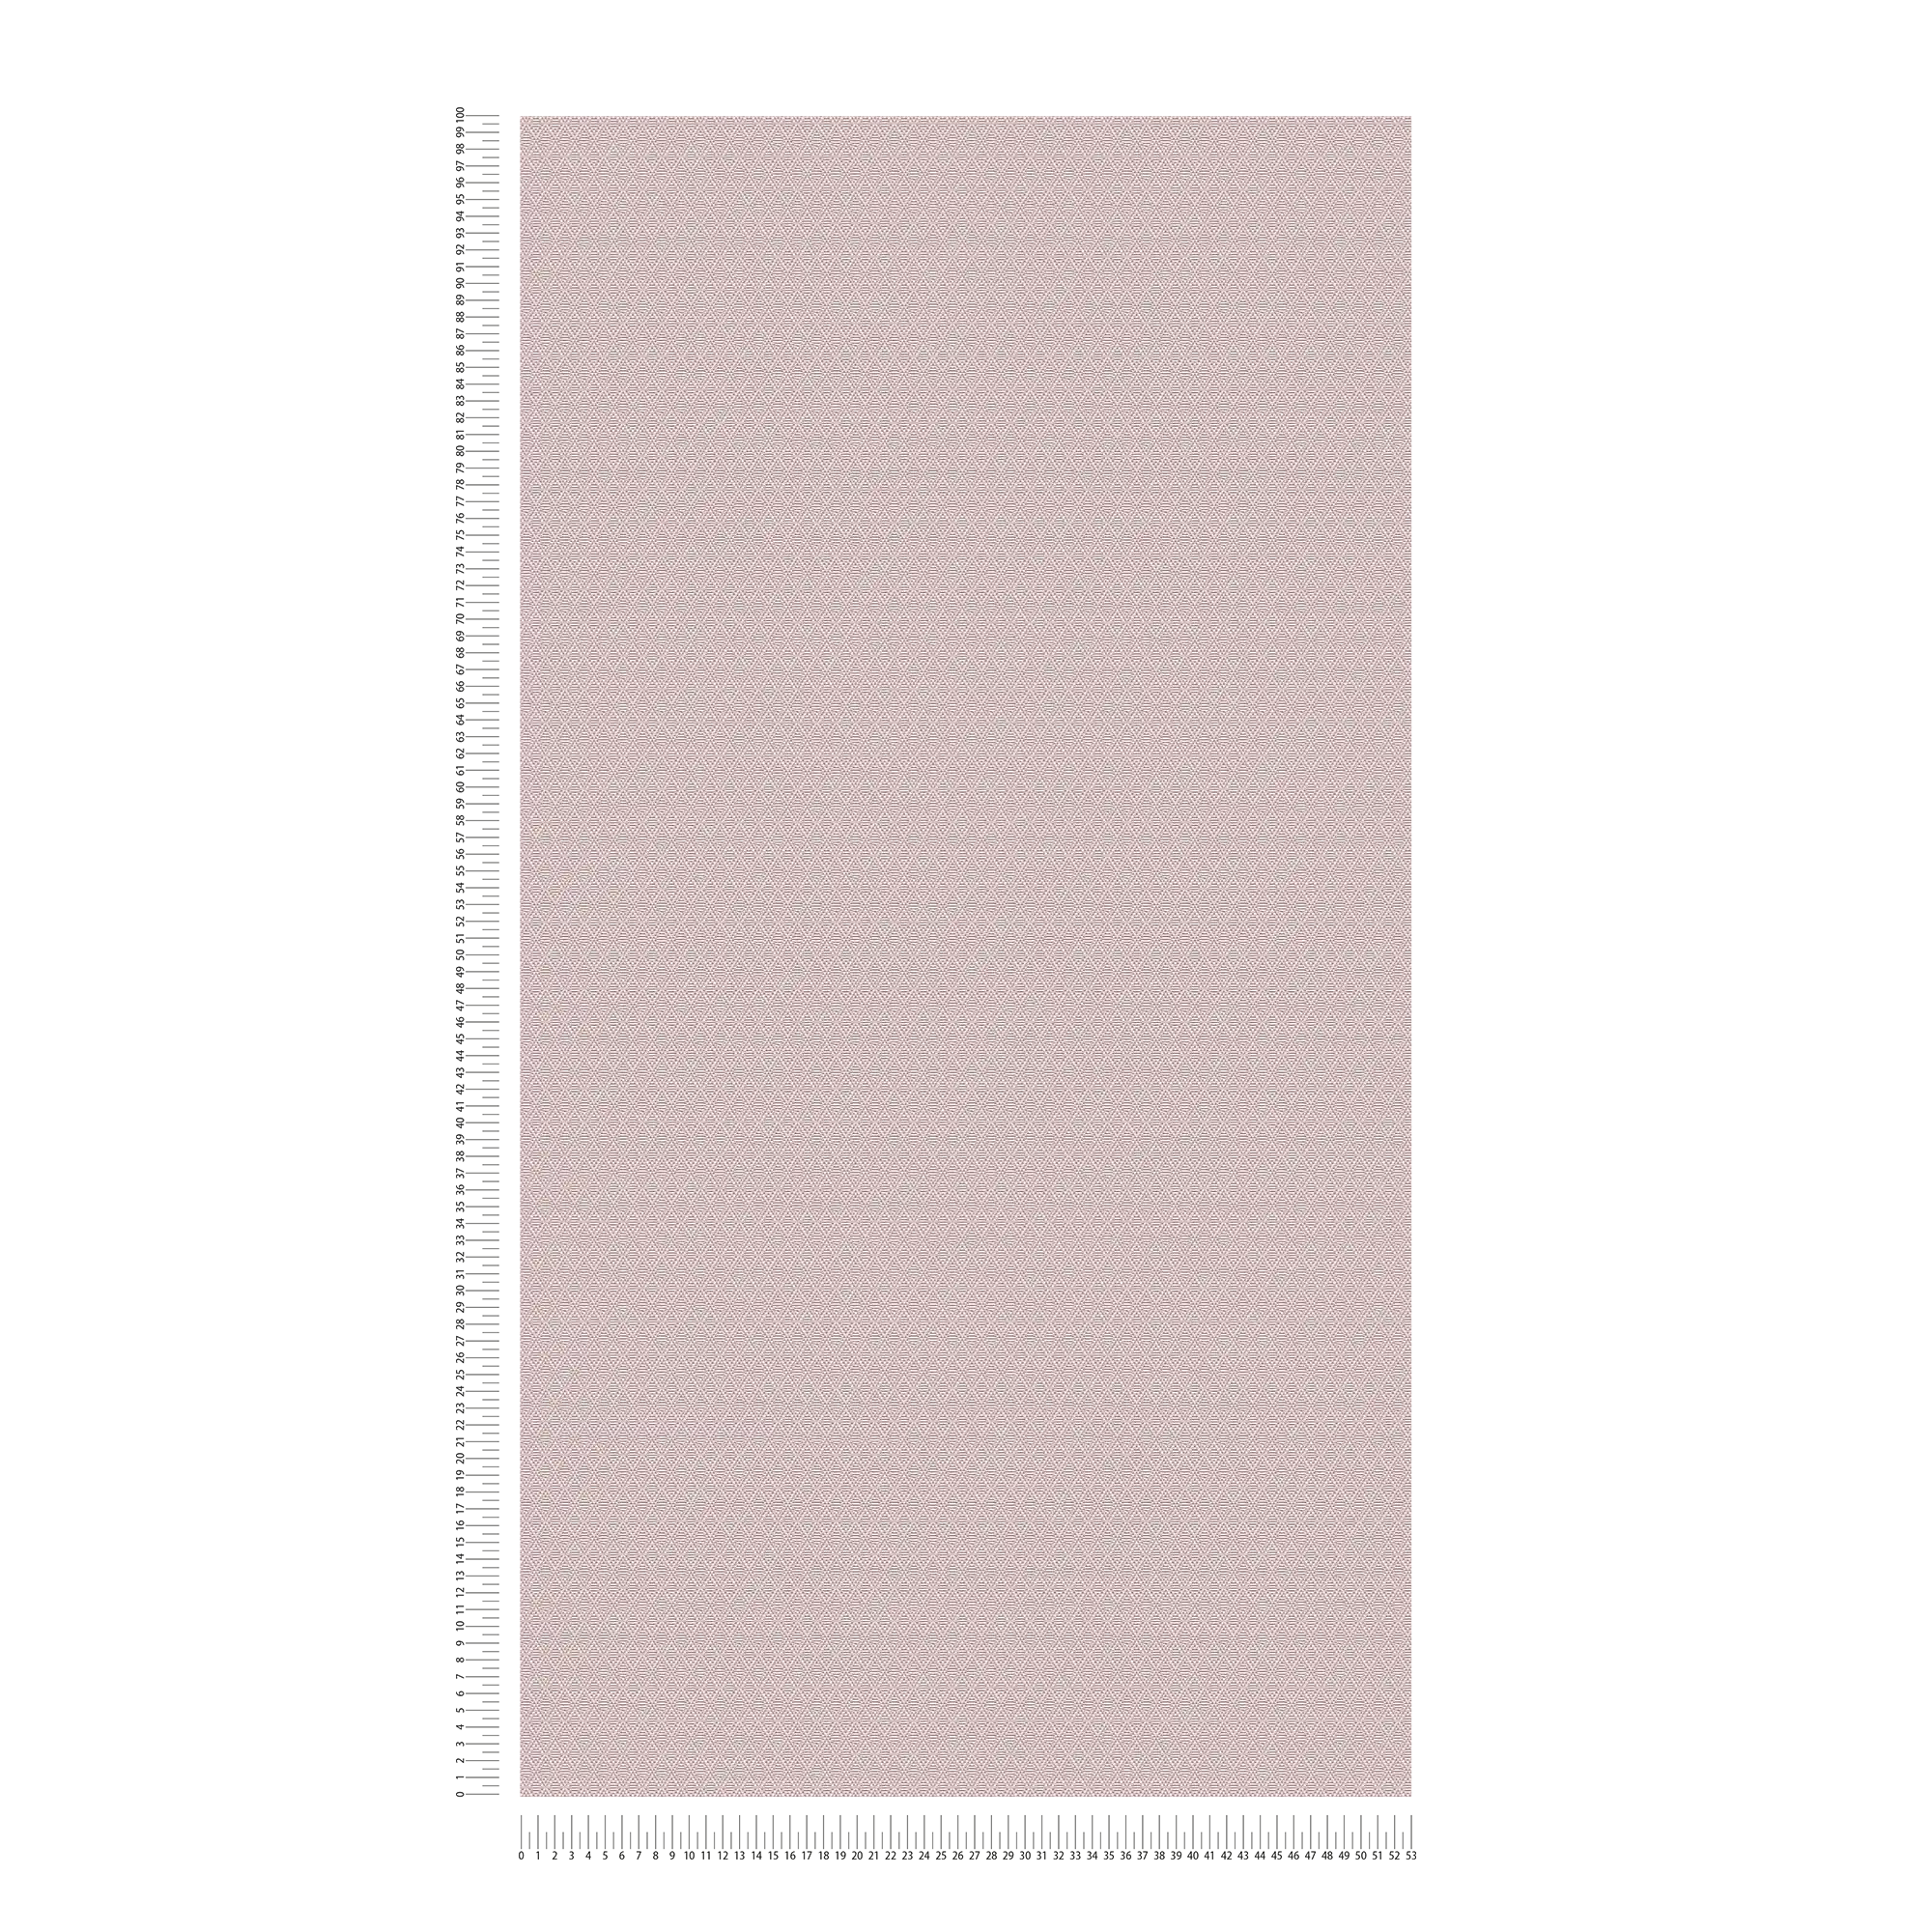             Mat eenheidsbehang met fijn structuurpatroon - bruin
        